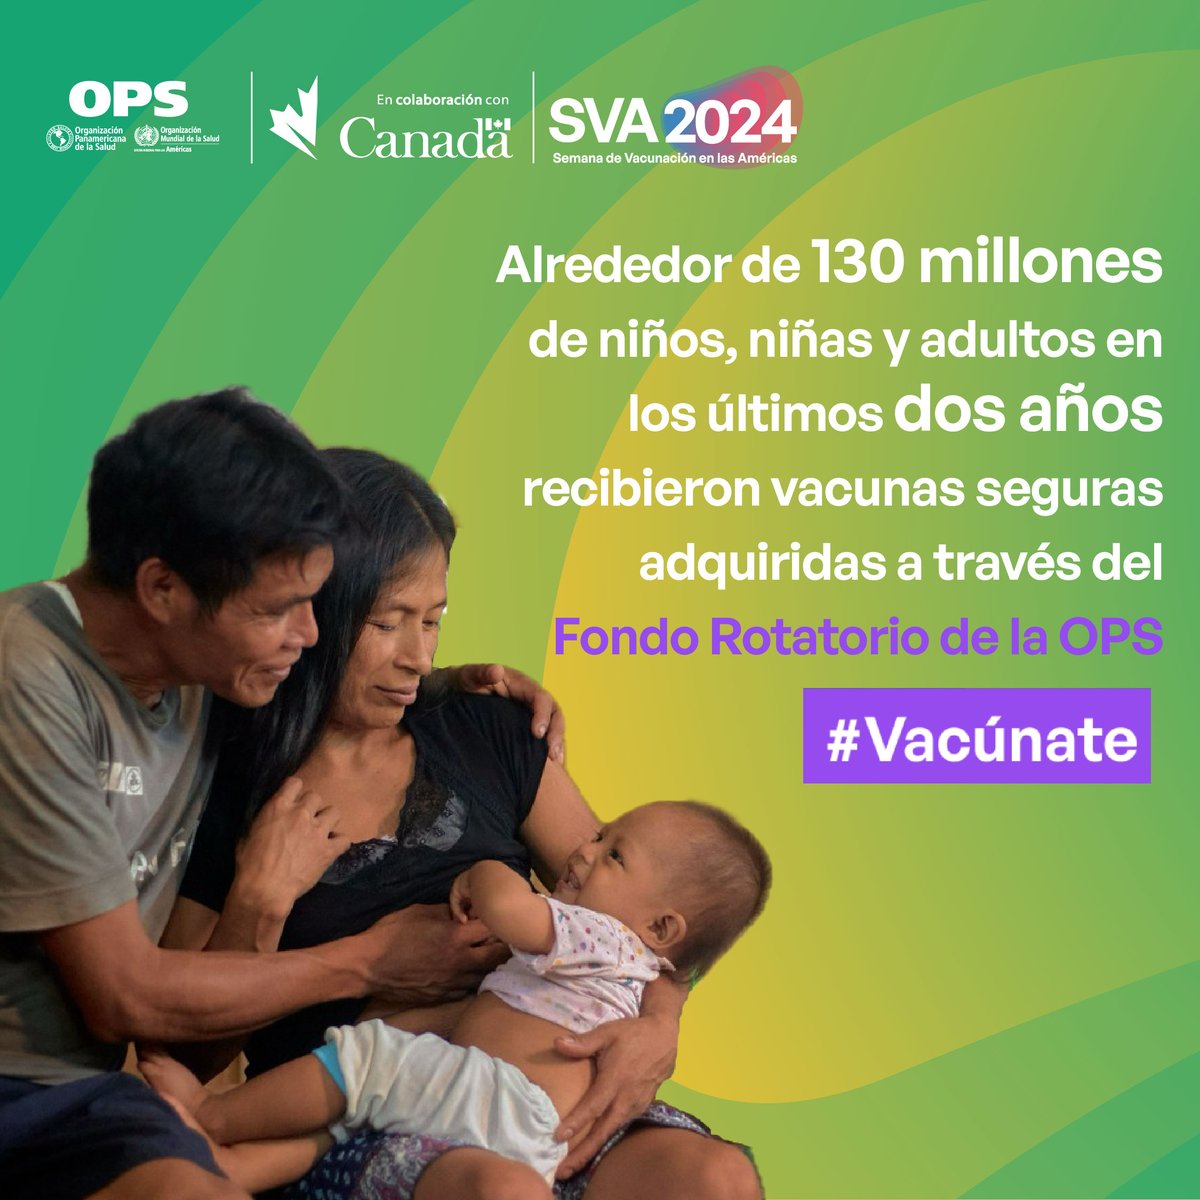 Gracias al respaldo y solidaridad de la Región de las Américas, la OPS continúa promoviendo el acceso a vacunas asequibles, seguras y de calidad. Actúa ahora para proteger tu futuro. #Vacúnate